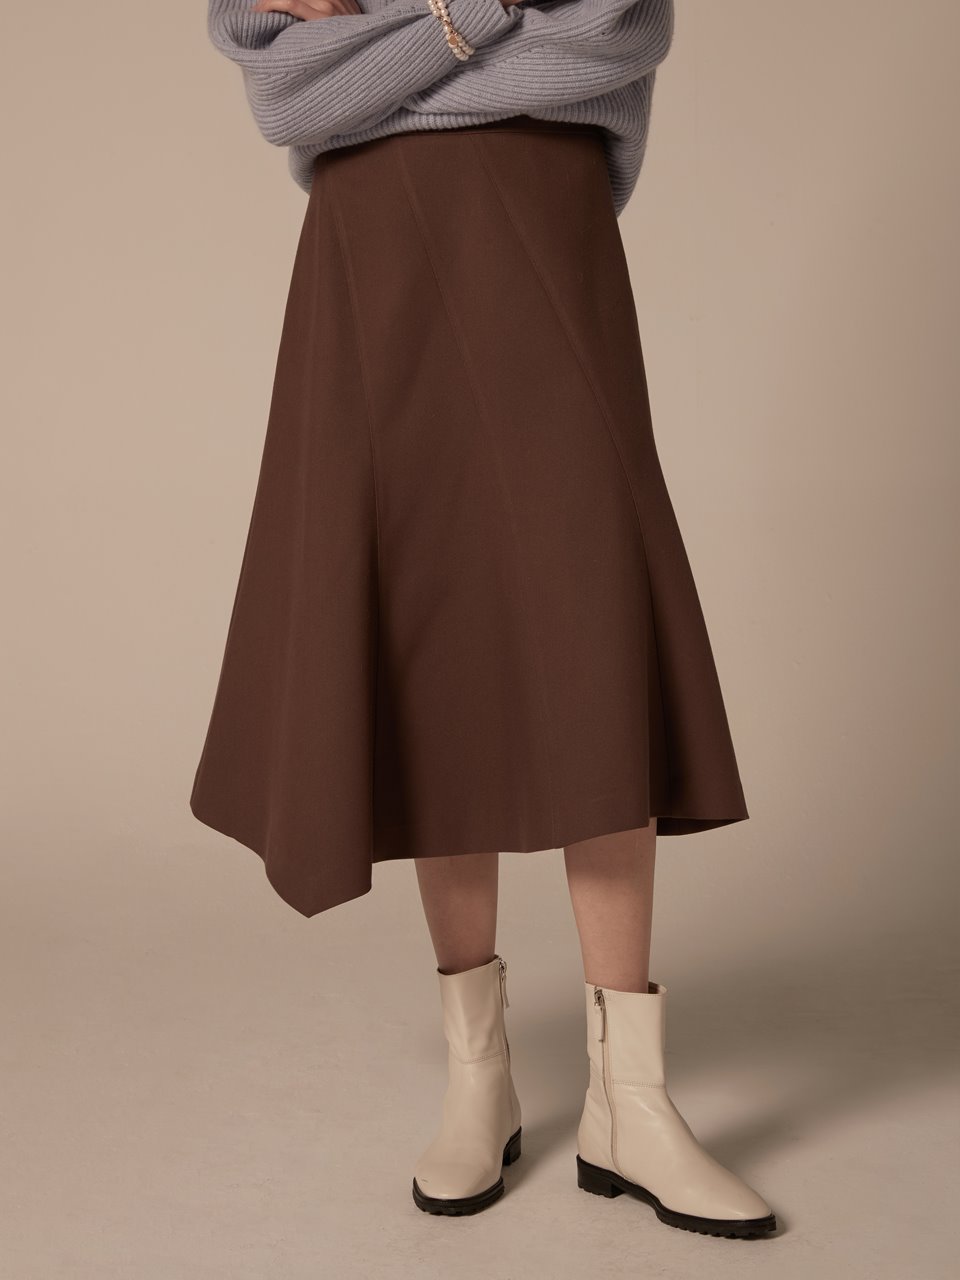 Diagonal cut skirt - Brown